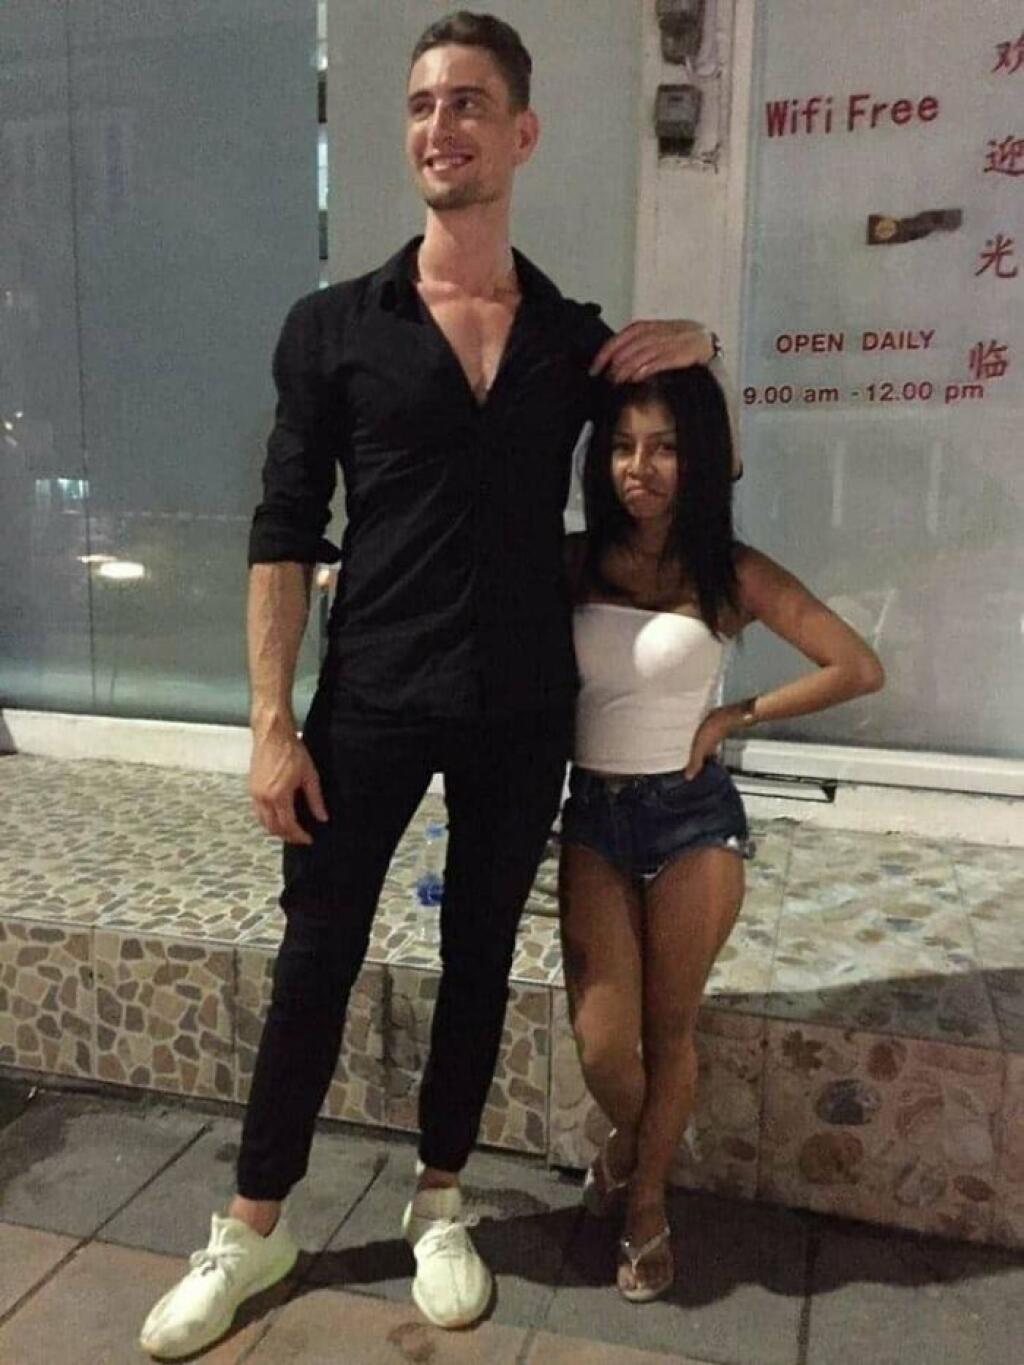 Высоким мужчинам нравятся. Высокий мужчина. Высокий парень с девушкой. Миниатюрная девушка и высокий мужчина. Рост 195 см.